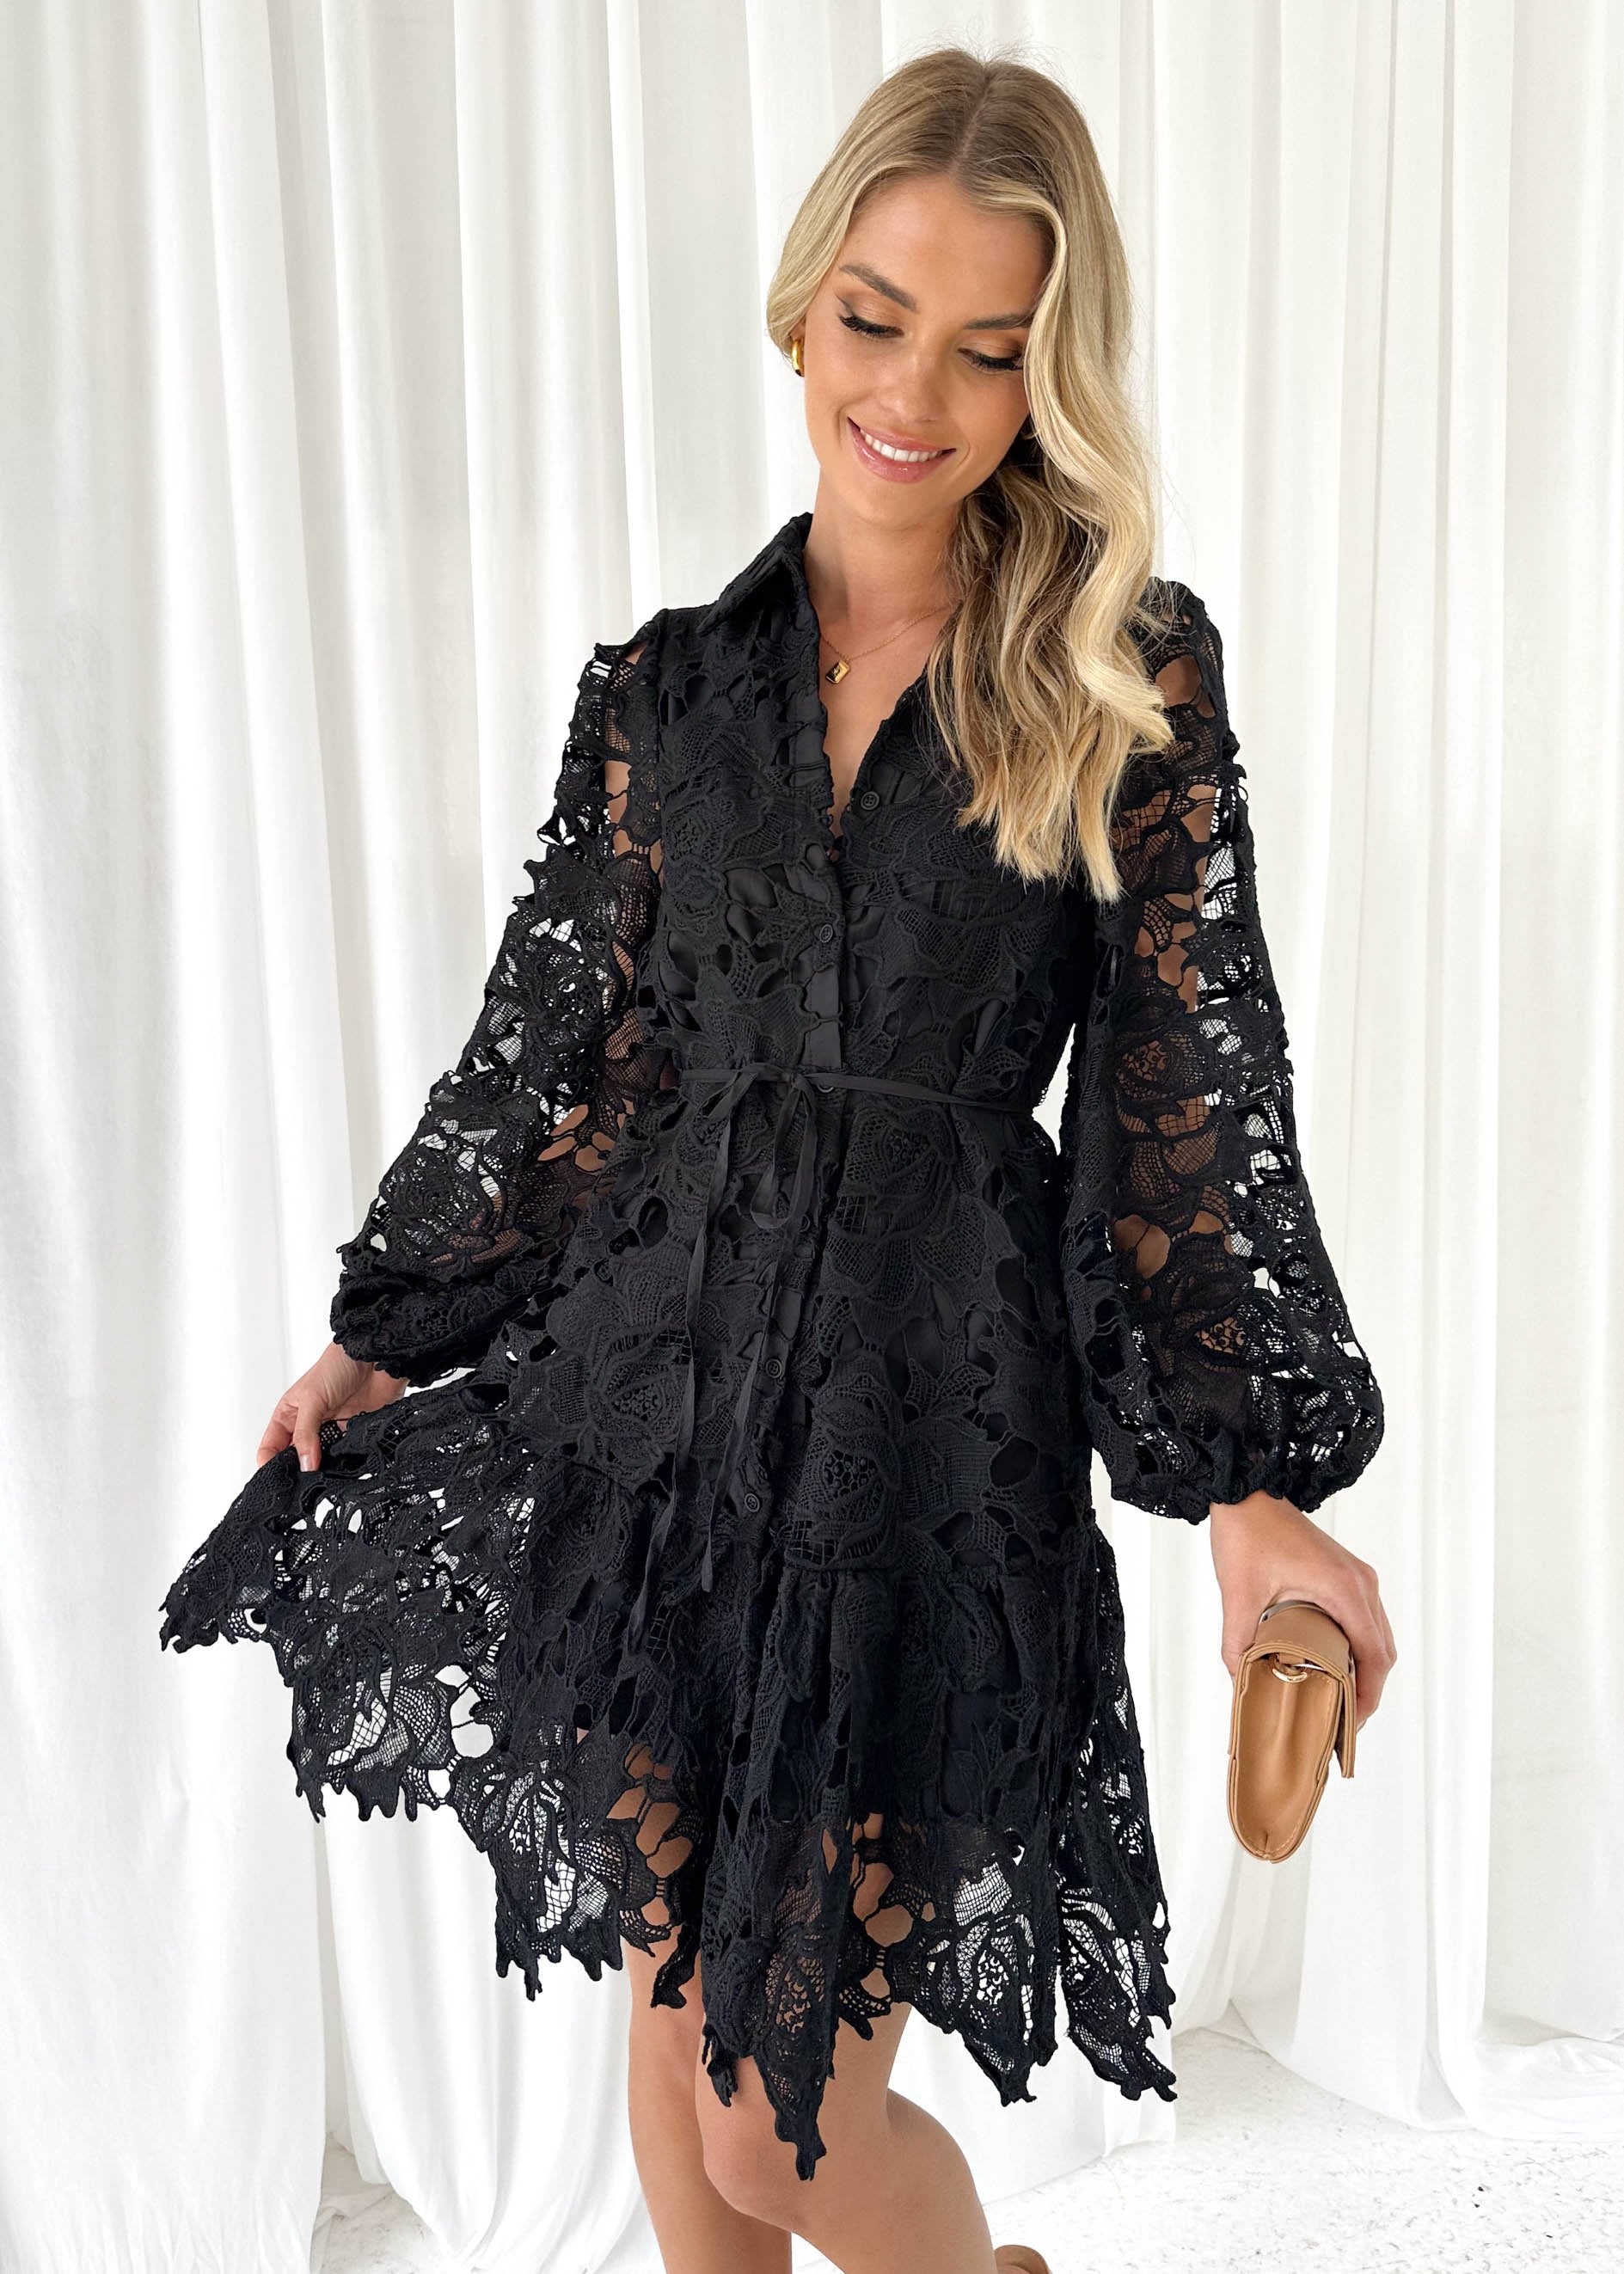 Gillion Dress - Black Lace